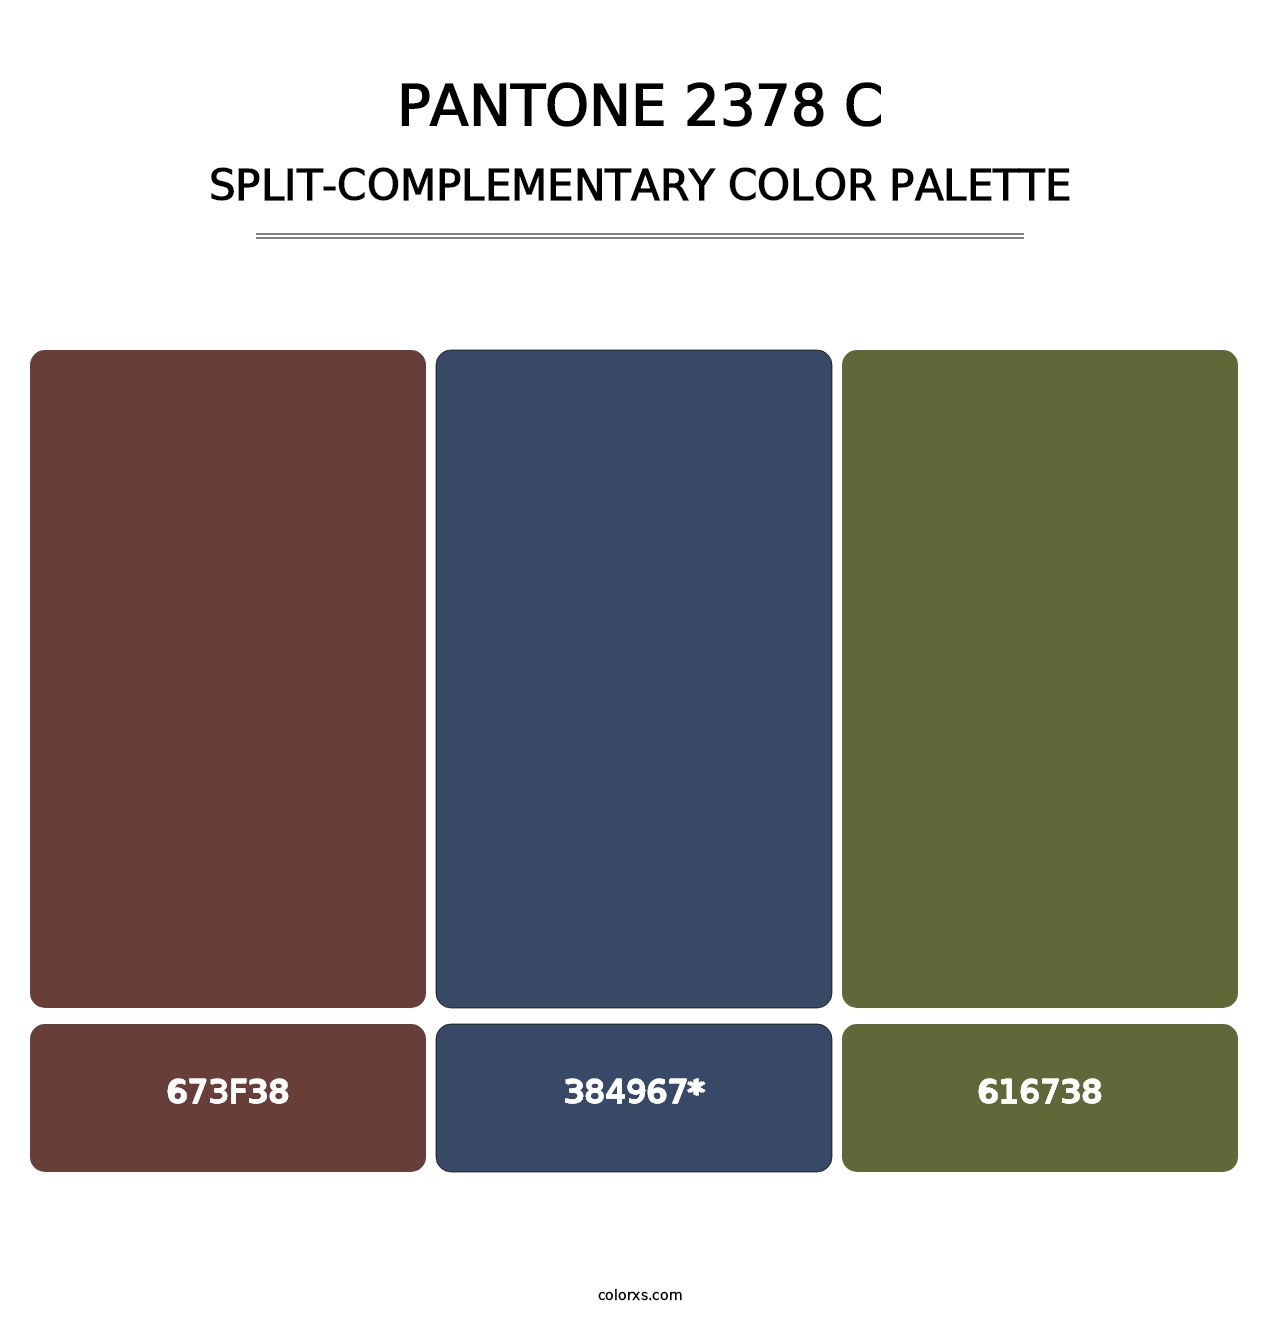 PANTONE 2378 C - Split-Complementary Color Palette